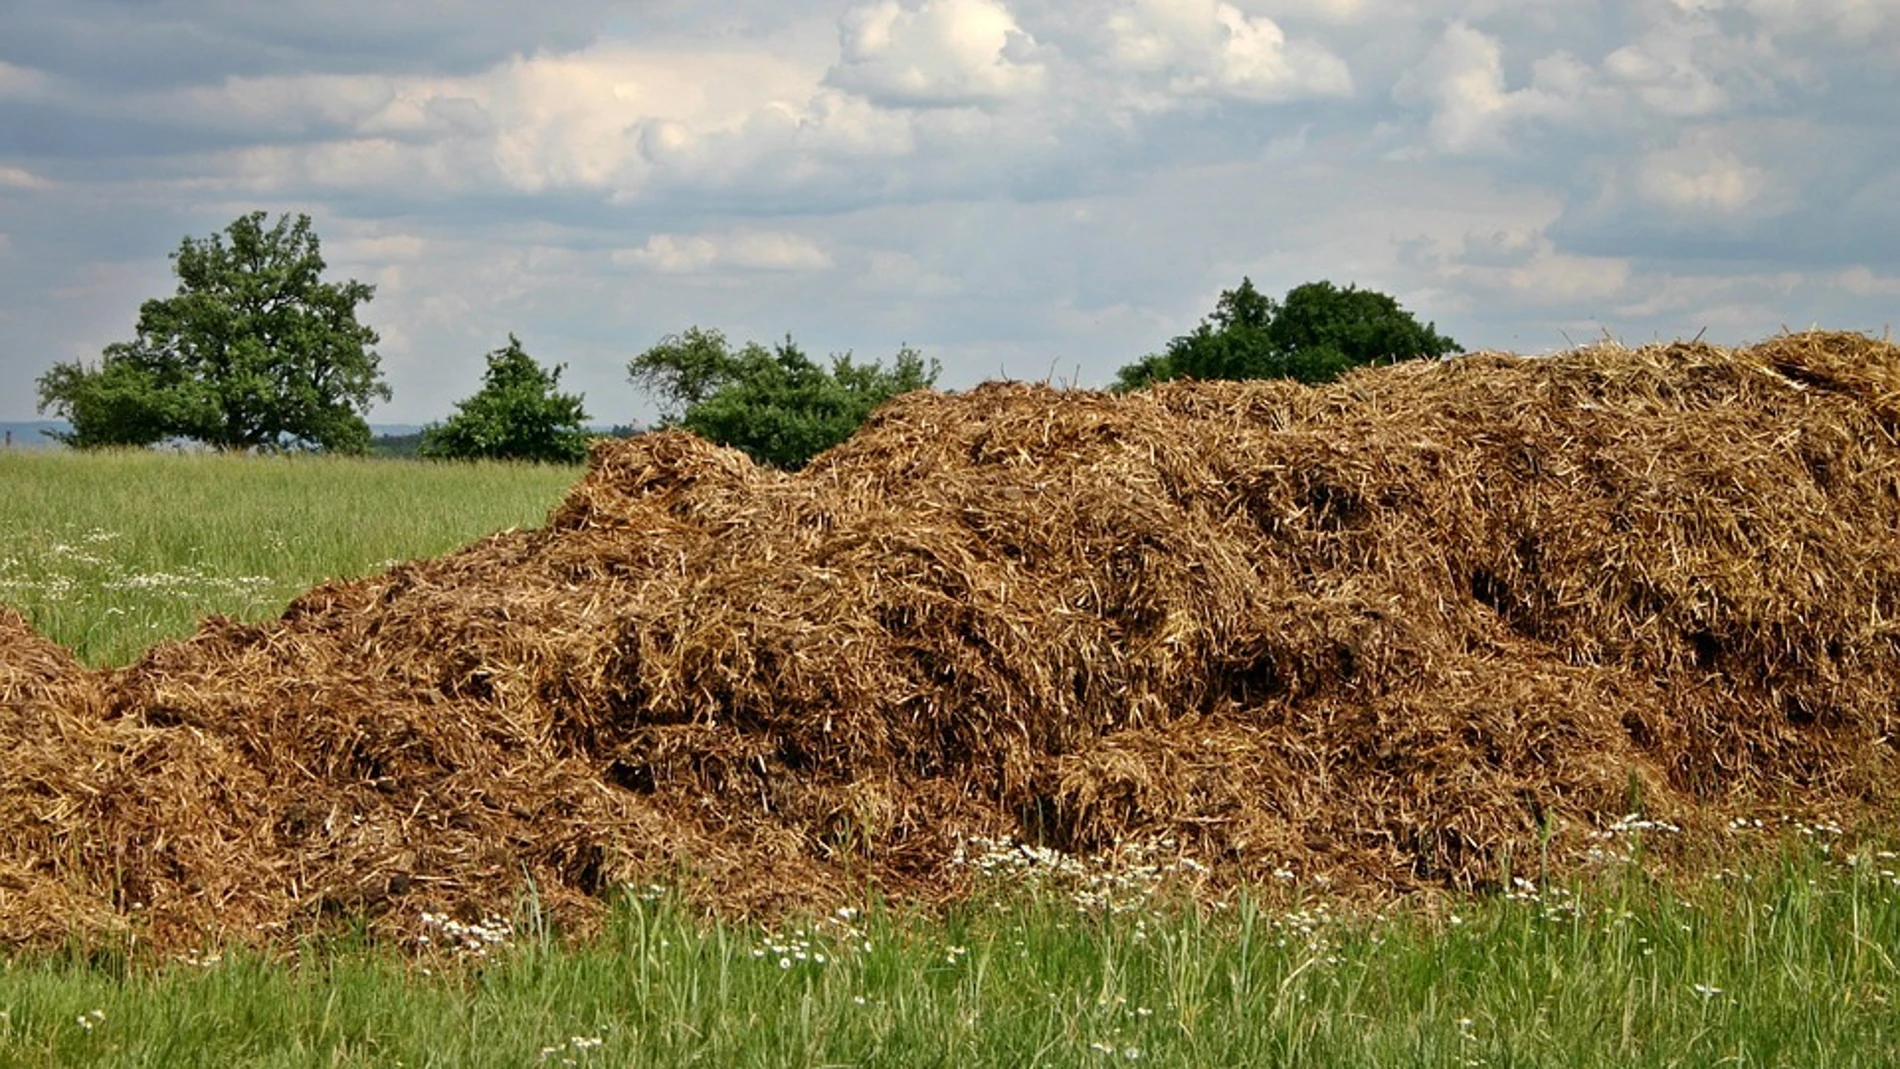 El estiércol se mezcla con compost para fertilizar la tierra, y debe alejarse de zonas vulnerables a la contaminación por nitratos durante los periodos de intensas lluvias